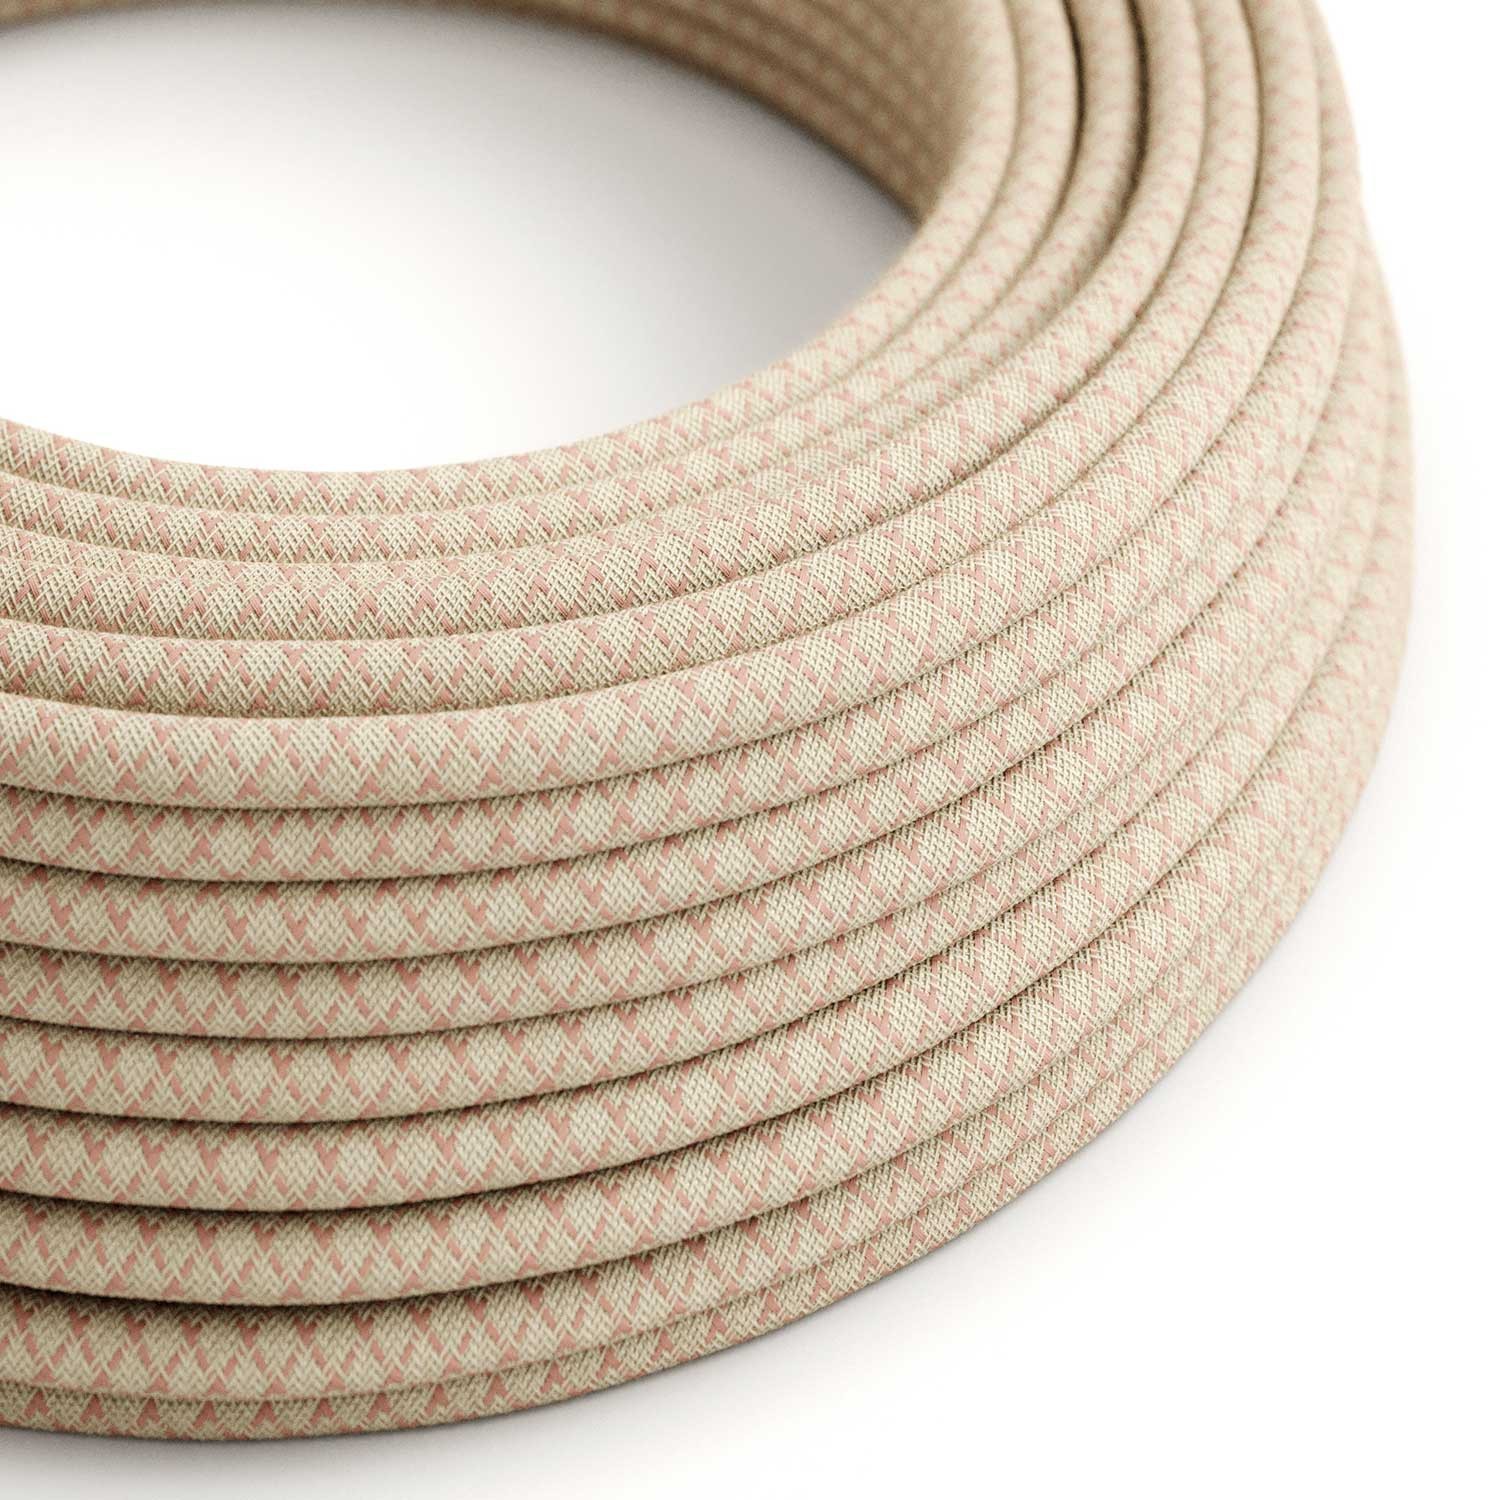 Textilkabel, altrosa-beige, Rautenmuster - Das Original von Creative-Cables - RD61 rund 2x0.75mm / 3x0.75mm